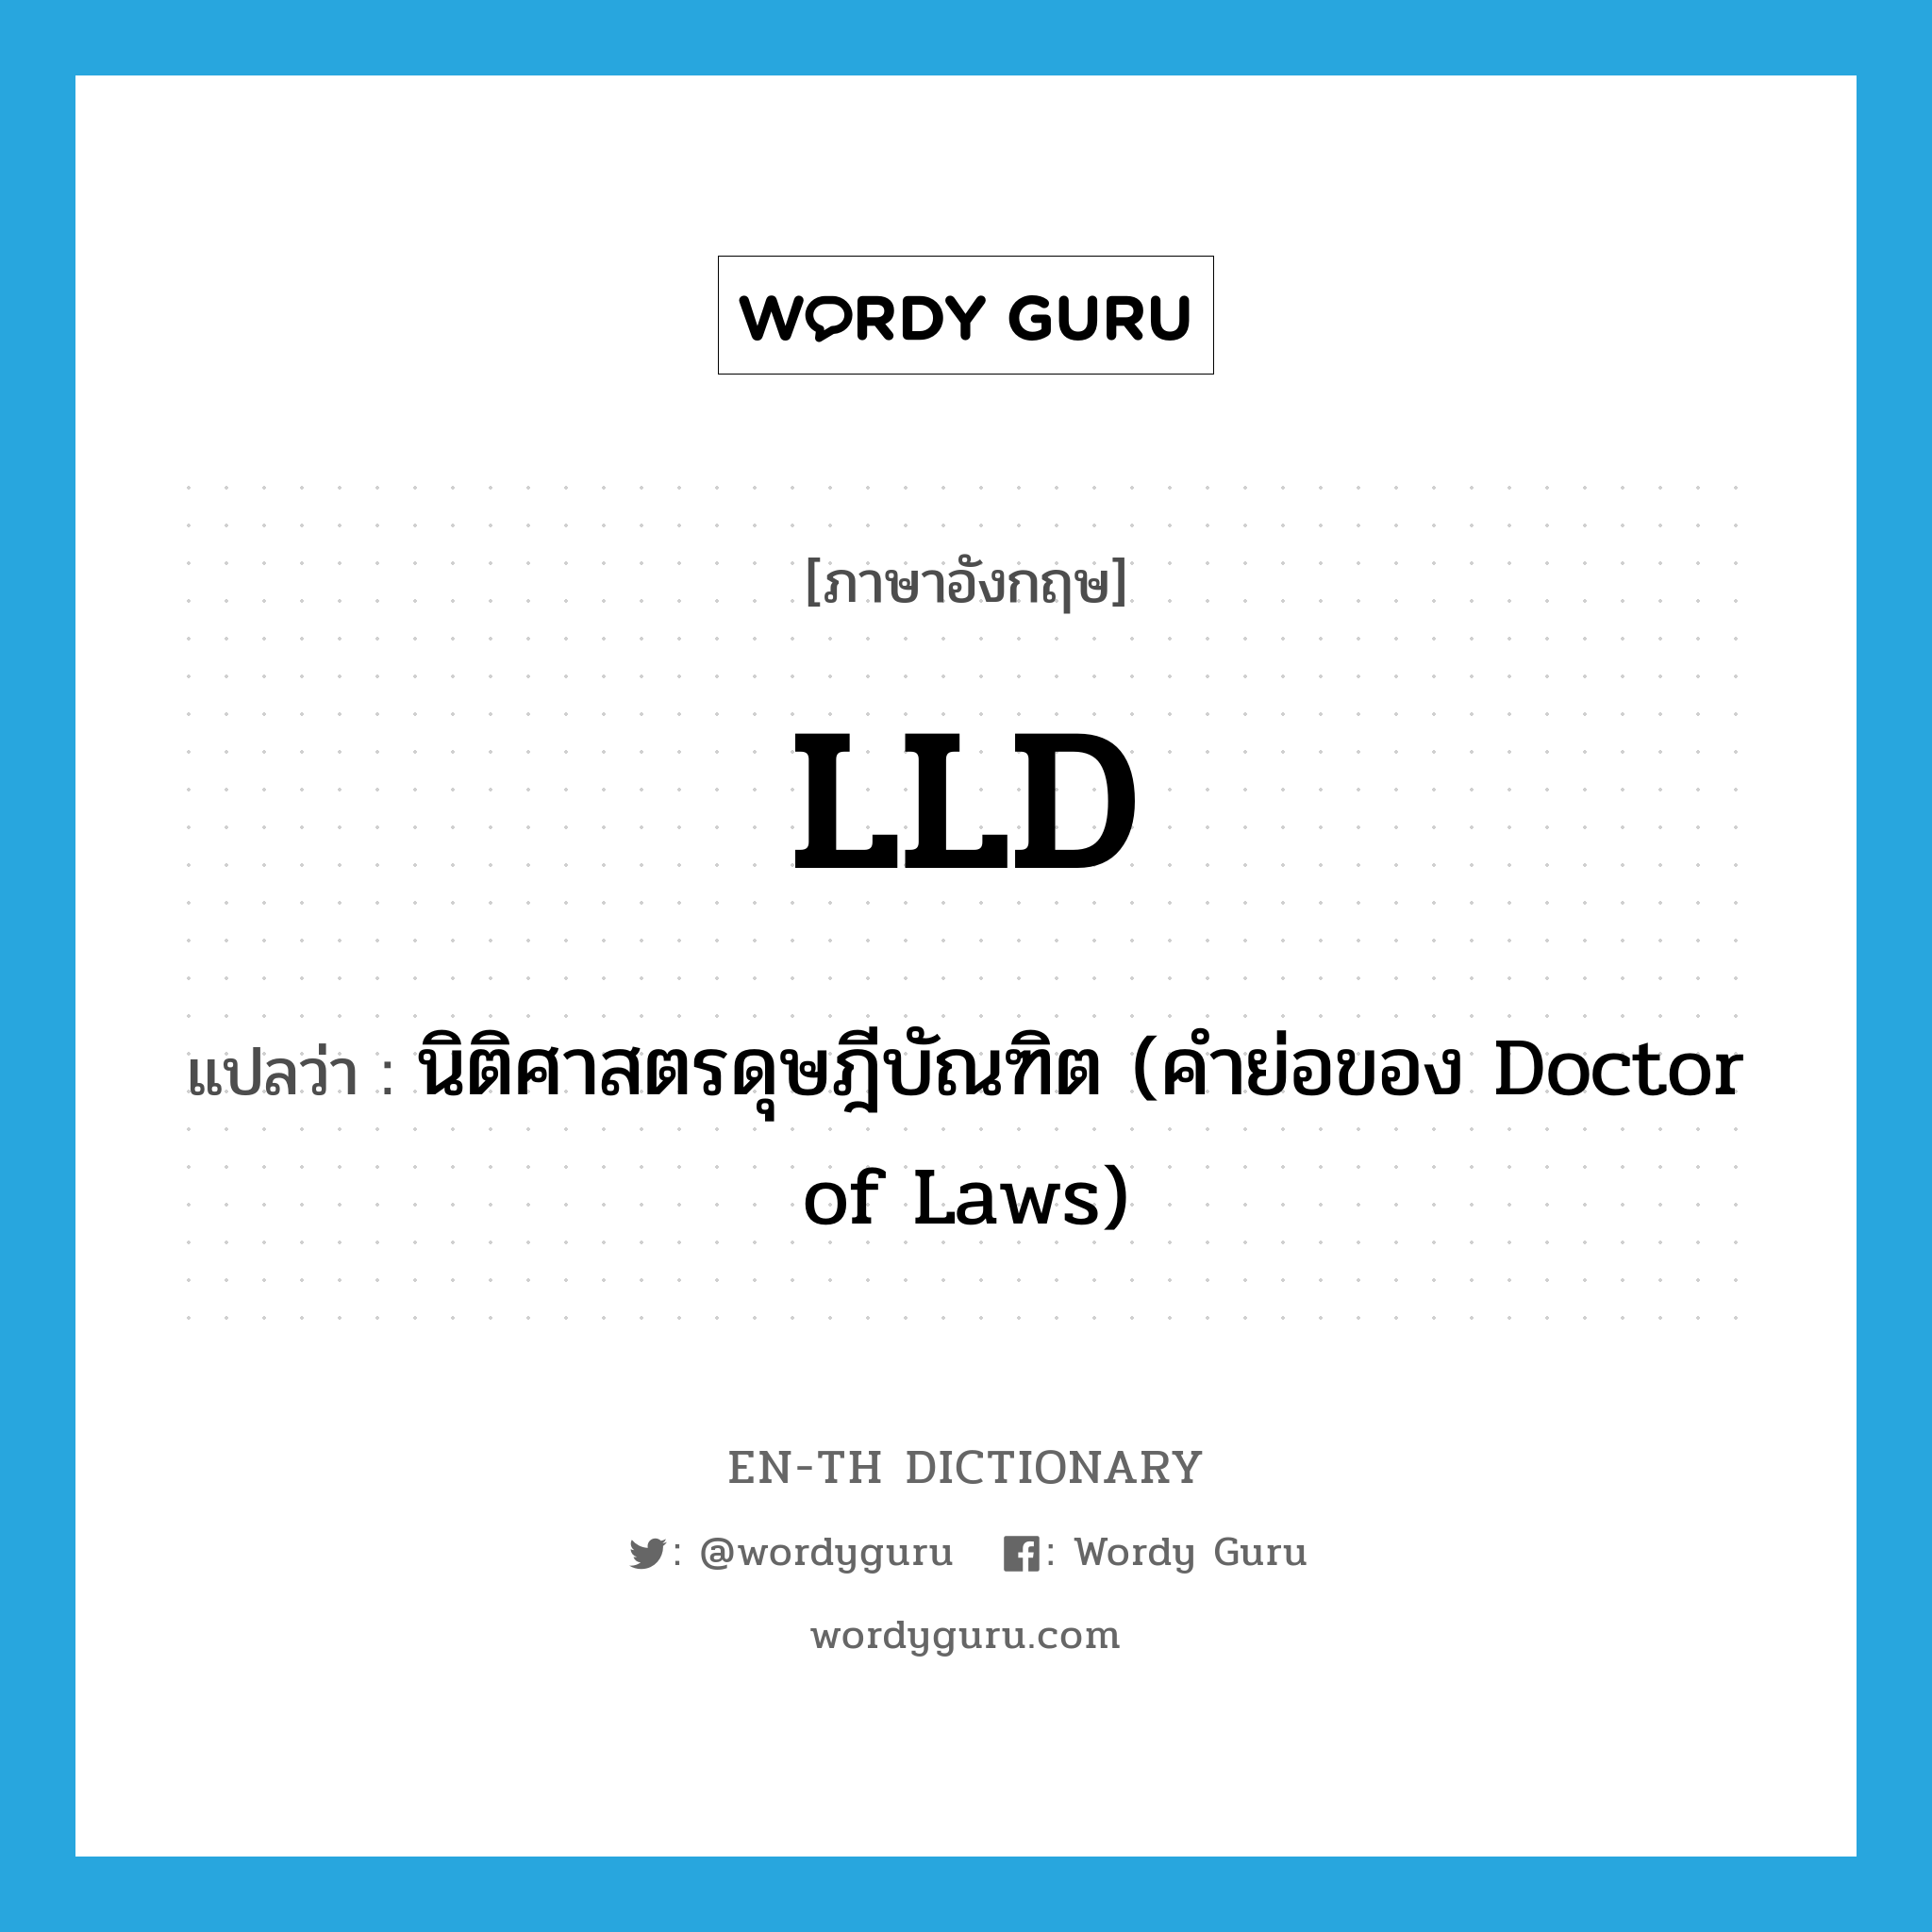 นิติศาสตรดุษฎีบัณฑิต (คำย่อของ Doctor of Laws) ภาษาอังกฤษ?, คำศัพท์ภาษาอังกฤษ นิติศาสตรดุษฎีบัณฑิต (คำย่อของ Doctor of Laws) แปลว่า LLD ประเภท ABBR หมวด ABBR